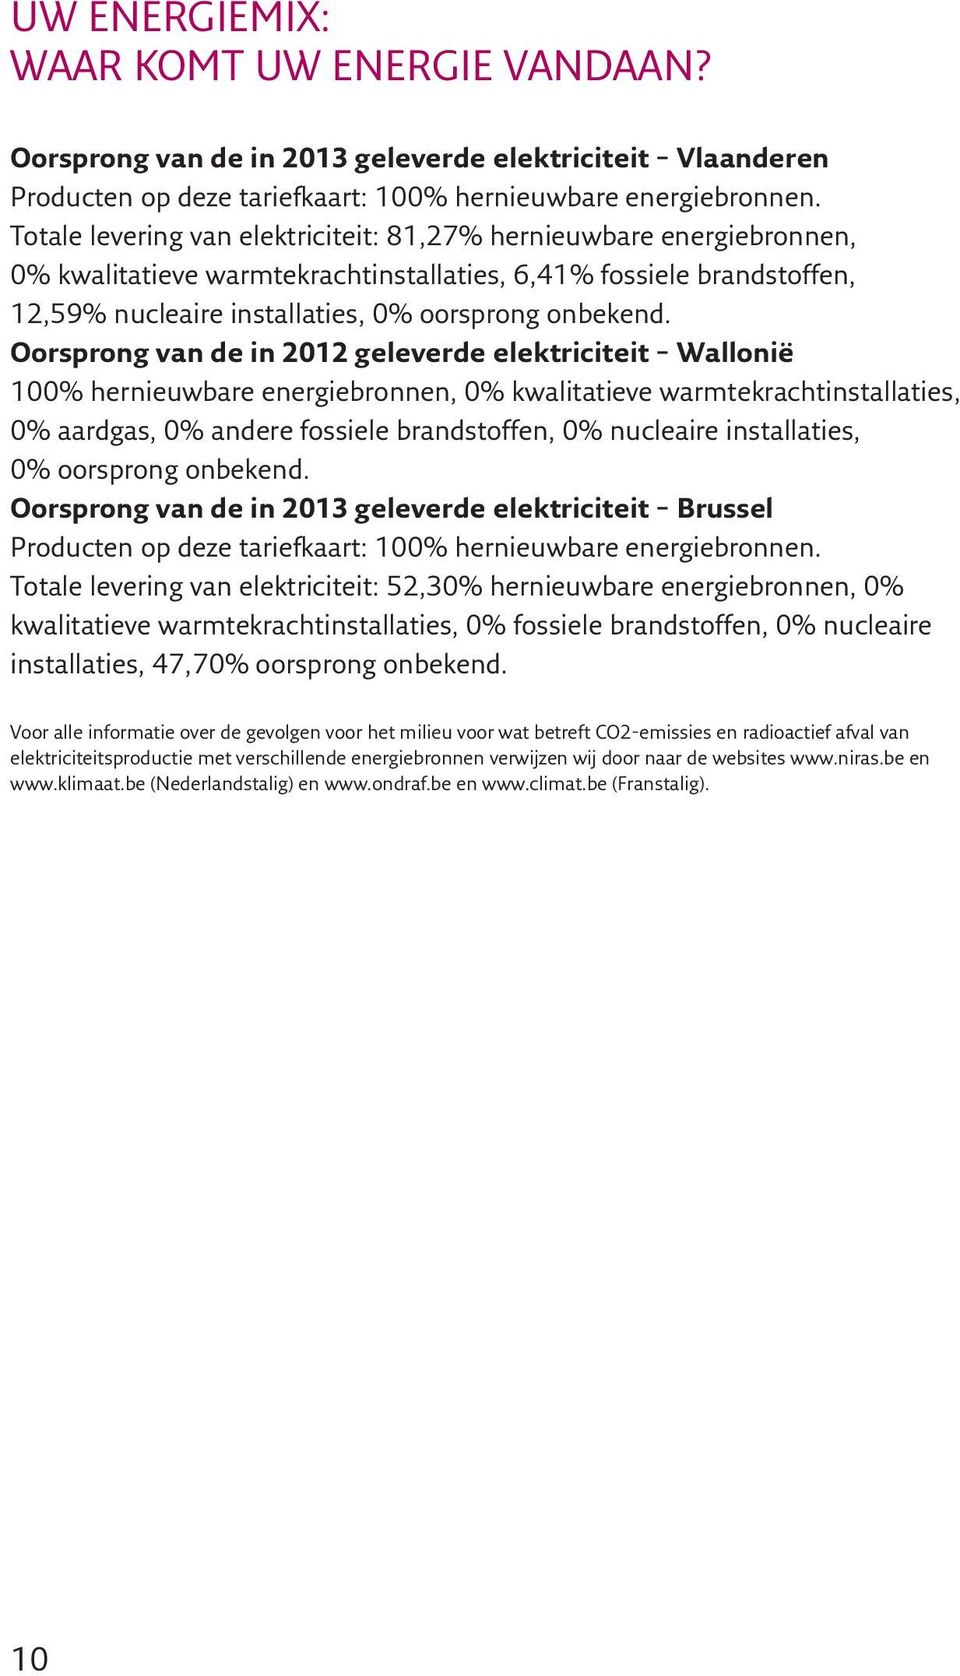 Oorsprong van de in 2012 geleverde elektriciteit Wallonië 100% hernieuwbare energiebronnen, 0% kwalitatieve warmtekrachtinstallaties, 0% aardgas, 0% andere fossiele brandstoffen, 0% nucleaire